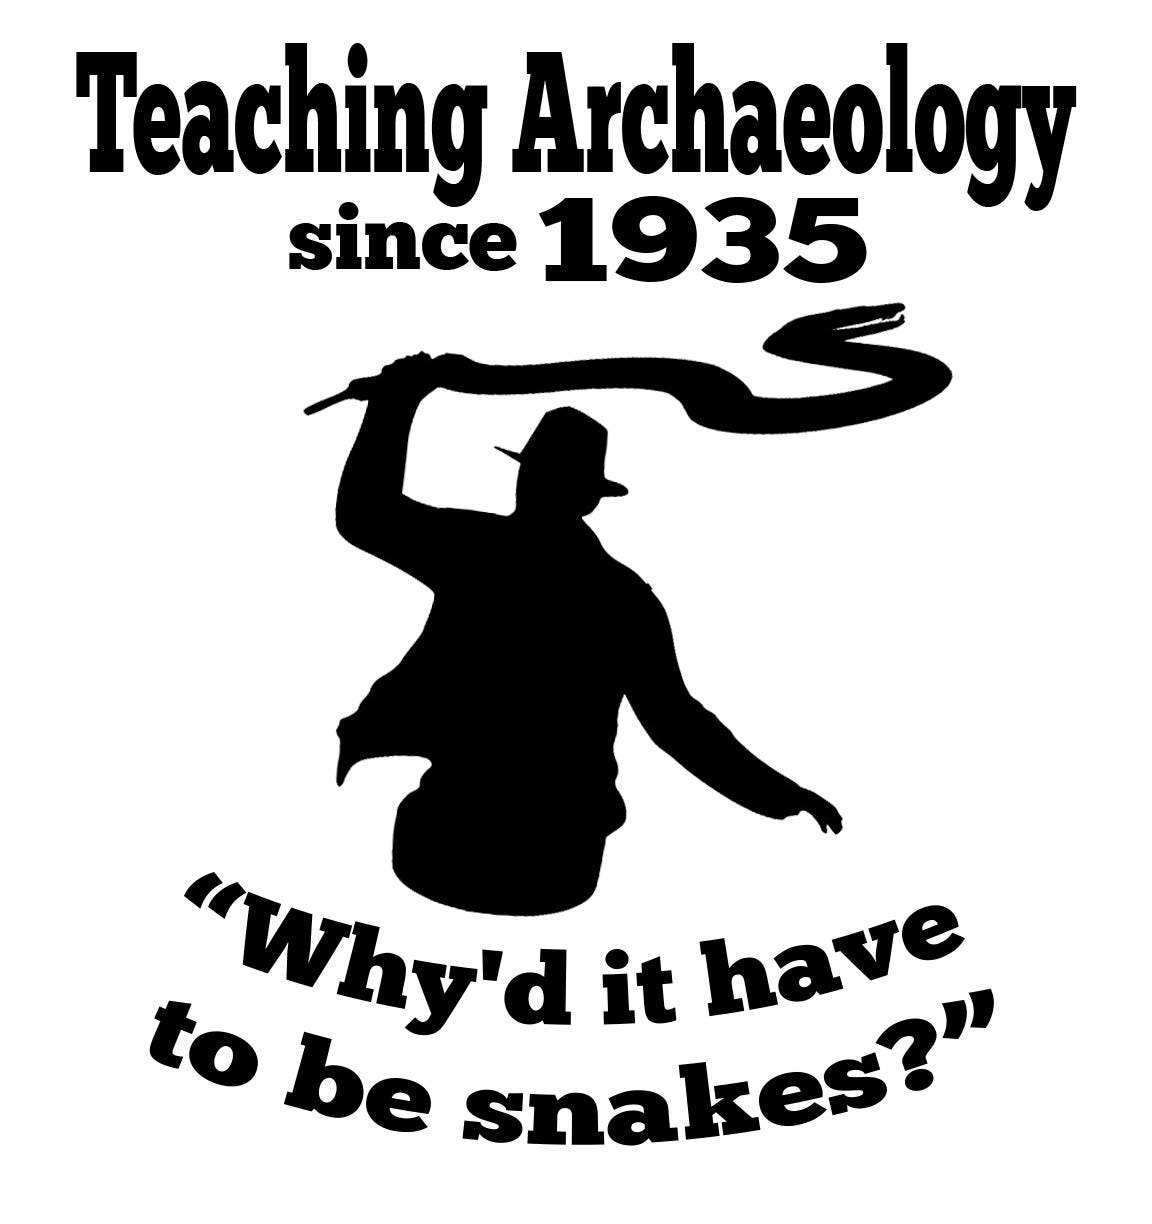 Download Indiana Jones Archeology School SVG